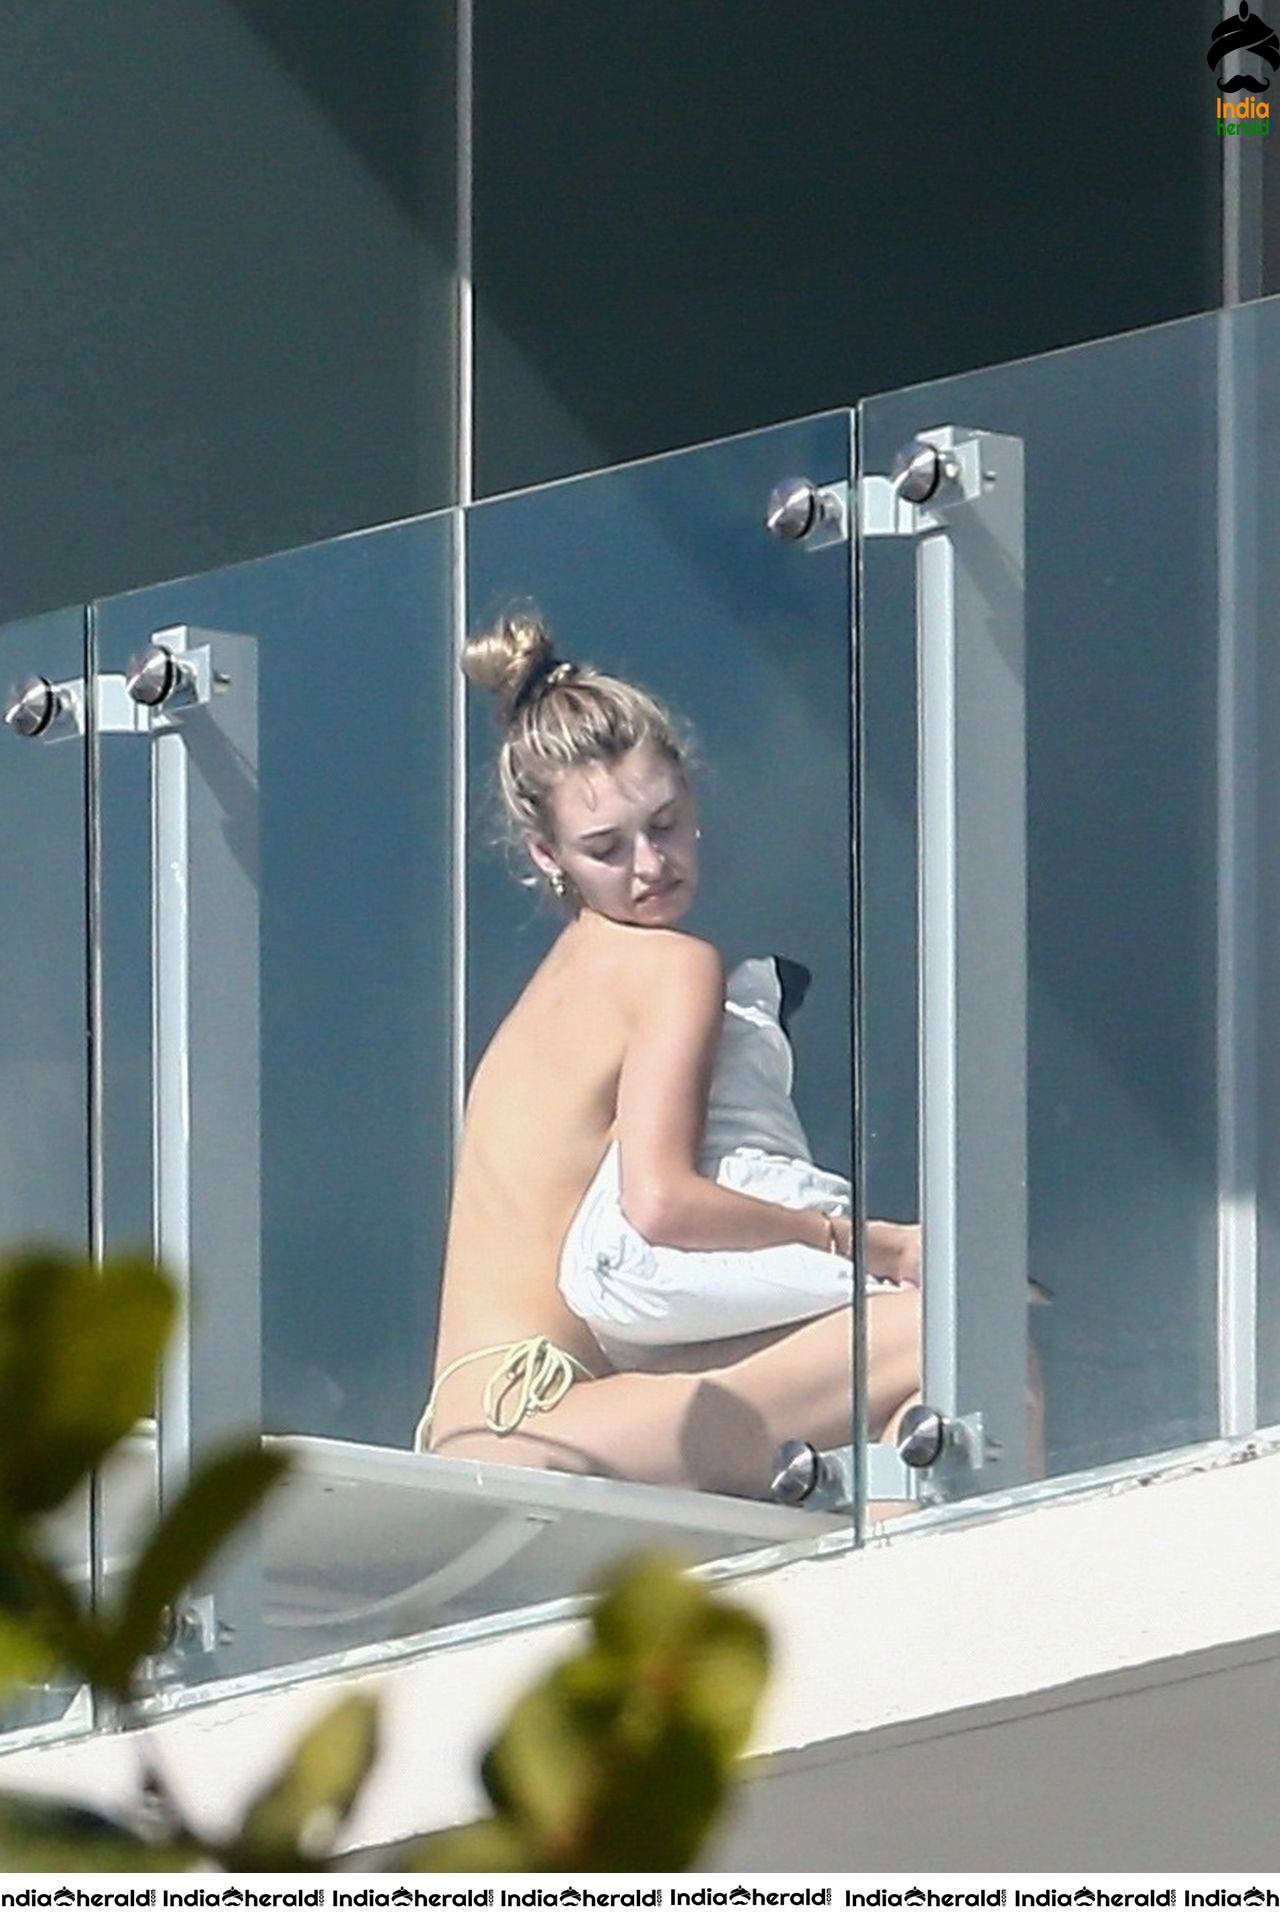 Roosmarijn de Kok sunbathing in Bikini off her balcony in Miami